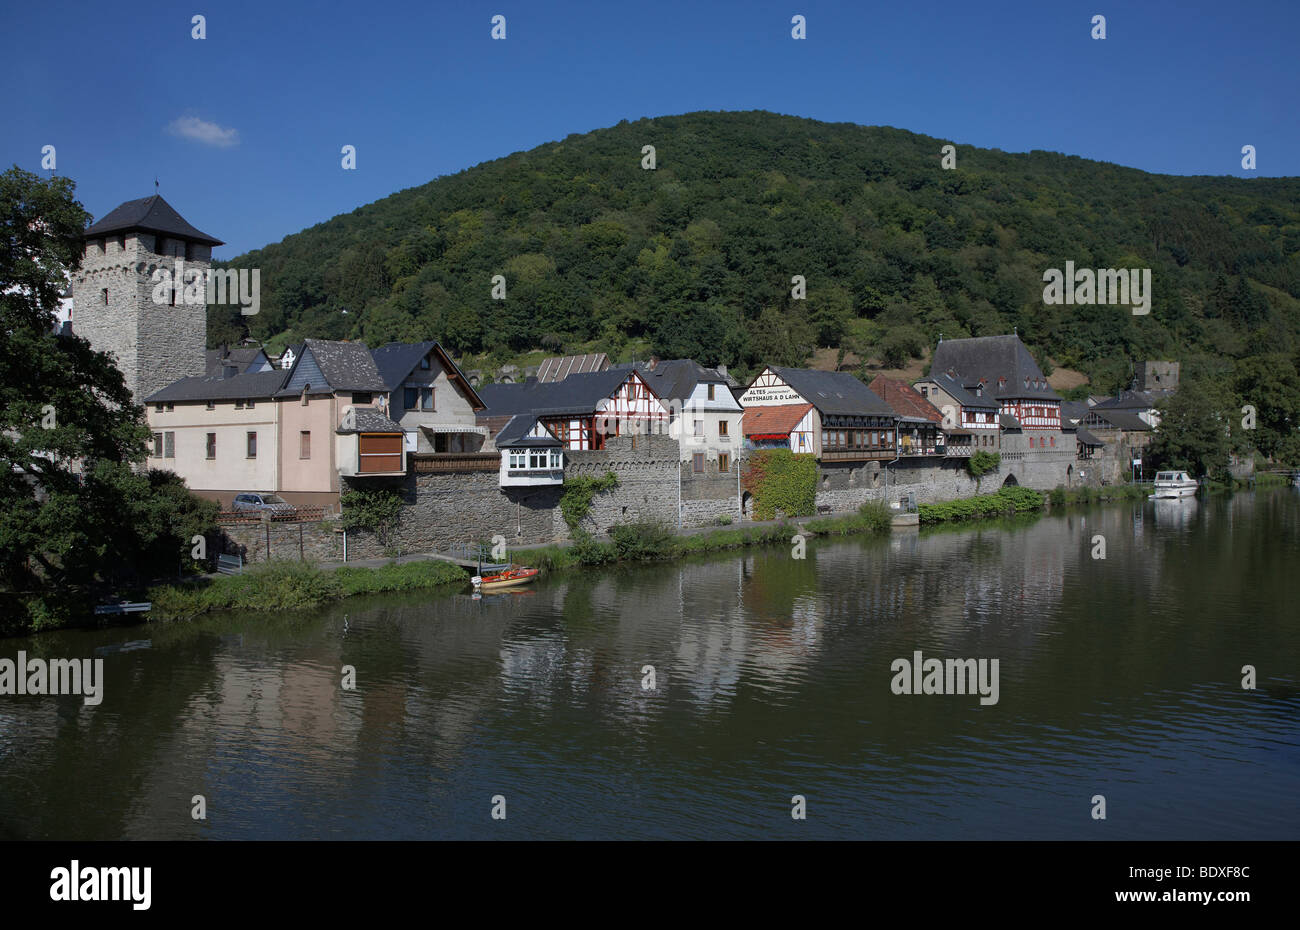 Dausenau sul fiume Lahn, Renania-Palatinato, Germania, Europa Foto Stock